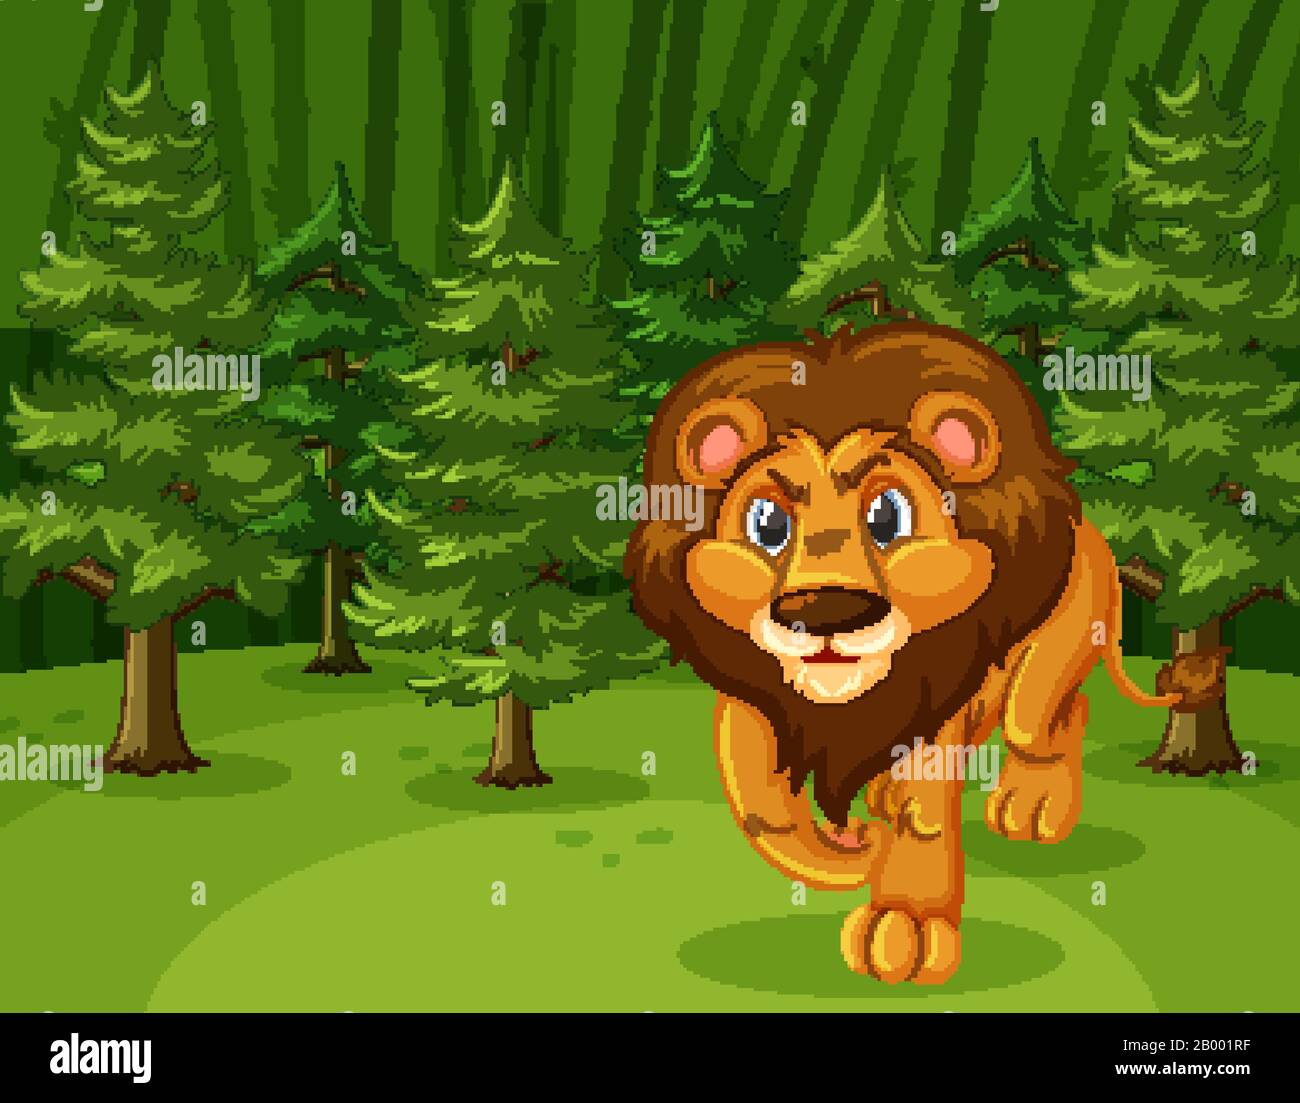 Scène avec lion sauvage marchant dans l'illustration de la forêt verte Illustration de Vecteur